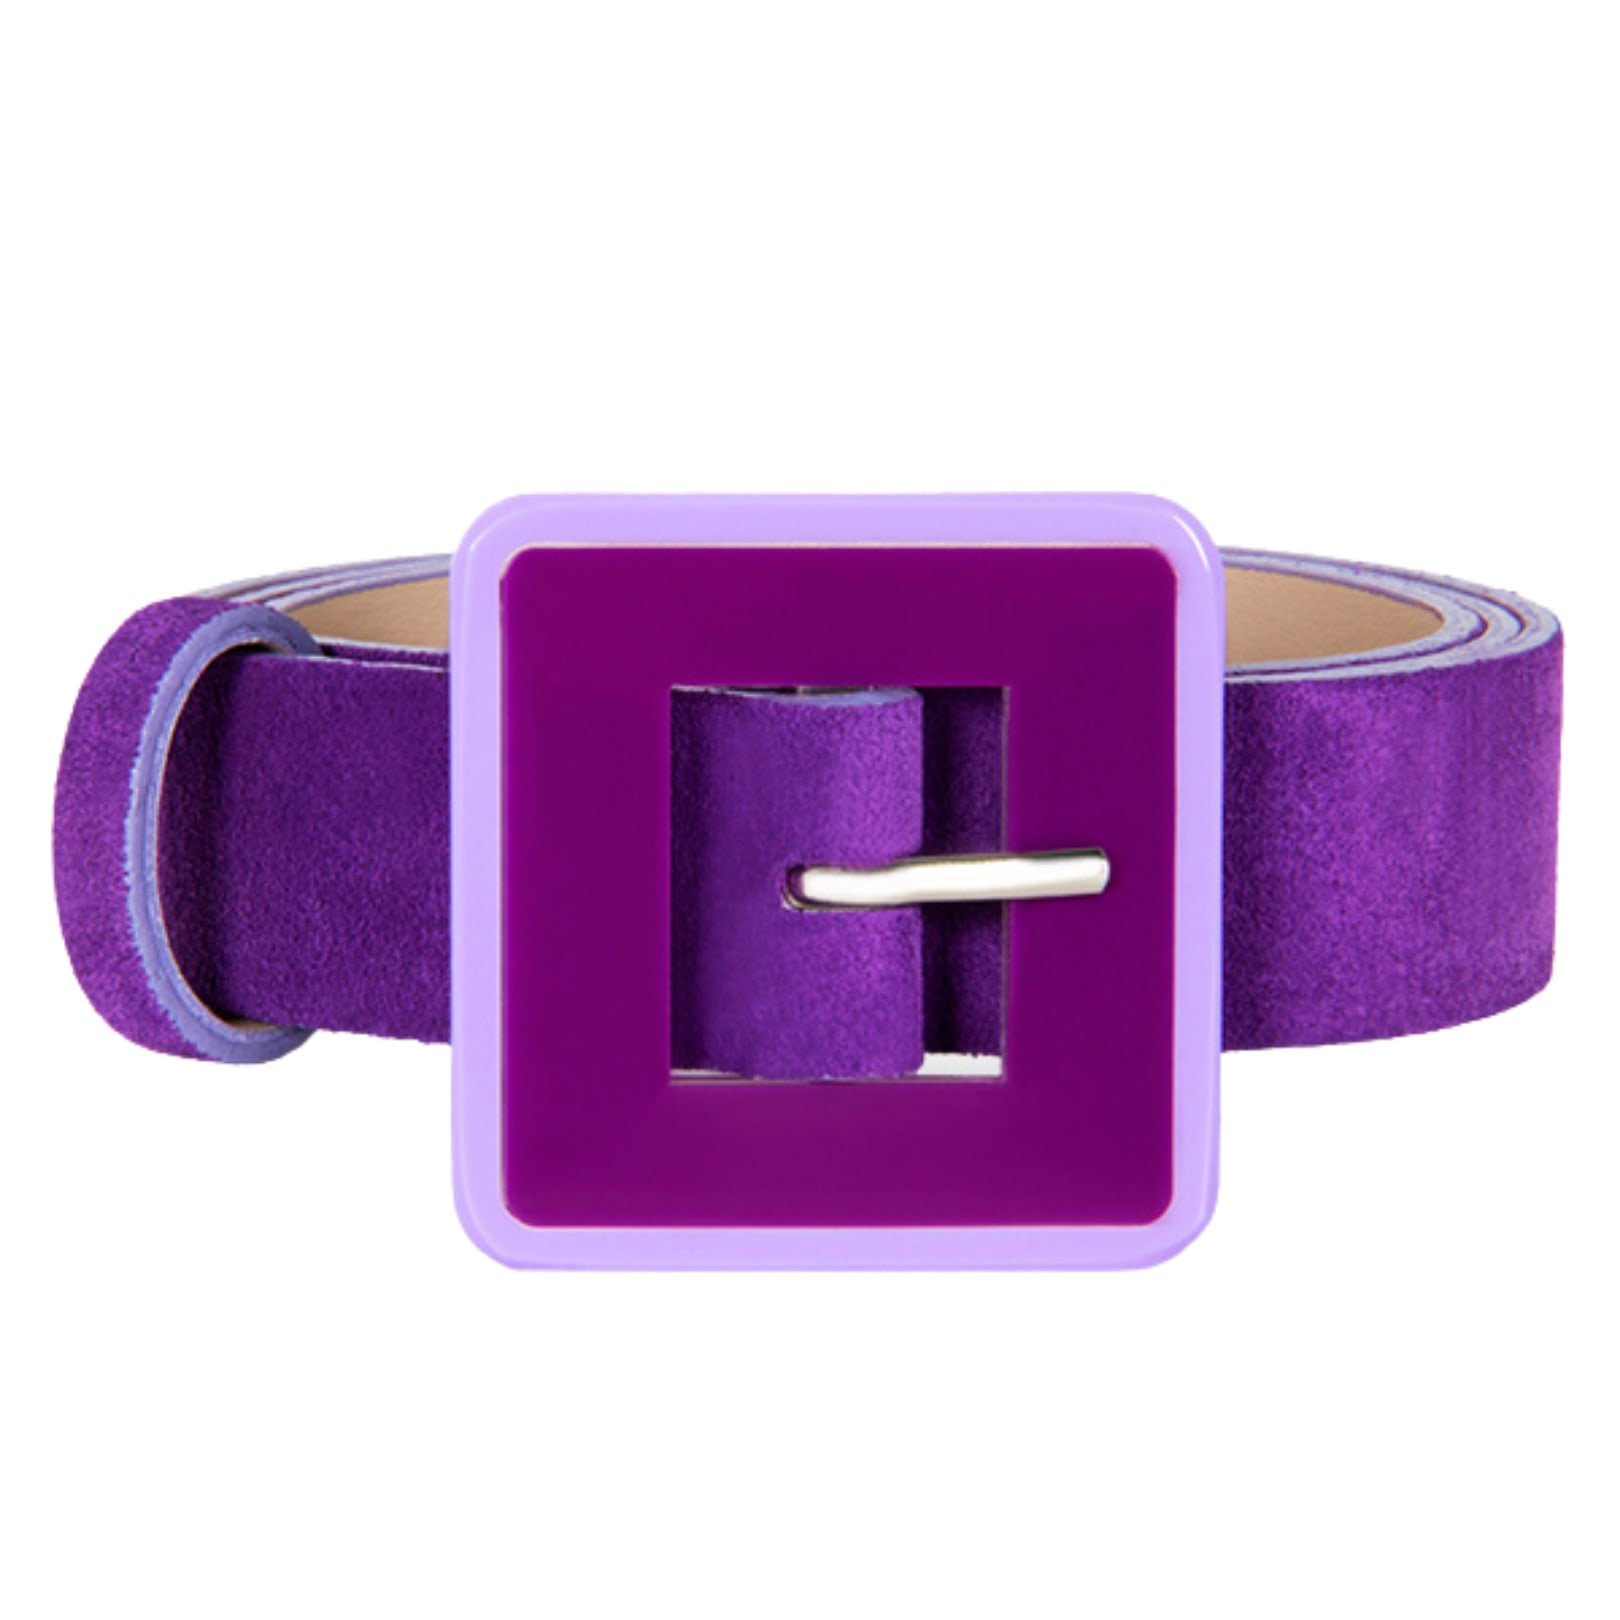 Beltbe Women's Pink / Purple Mini Square Acrylic Buckle Belt - Purple